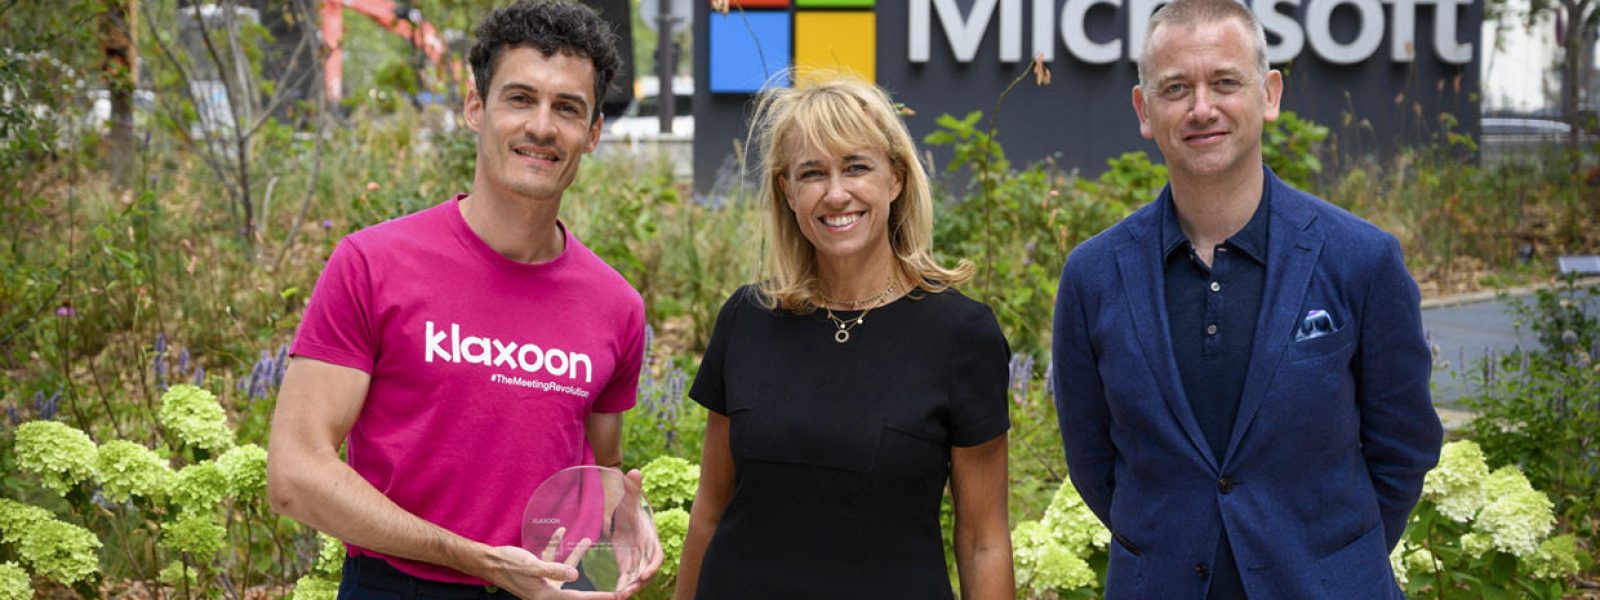 Remise du prix Partner of The Year 2020 de Microsoft, en présence d’Agnès Van de Walle, directrice Partenaires et Start-ups et de Carlo Purassanta, Président de Microsoft France.